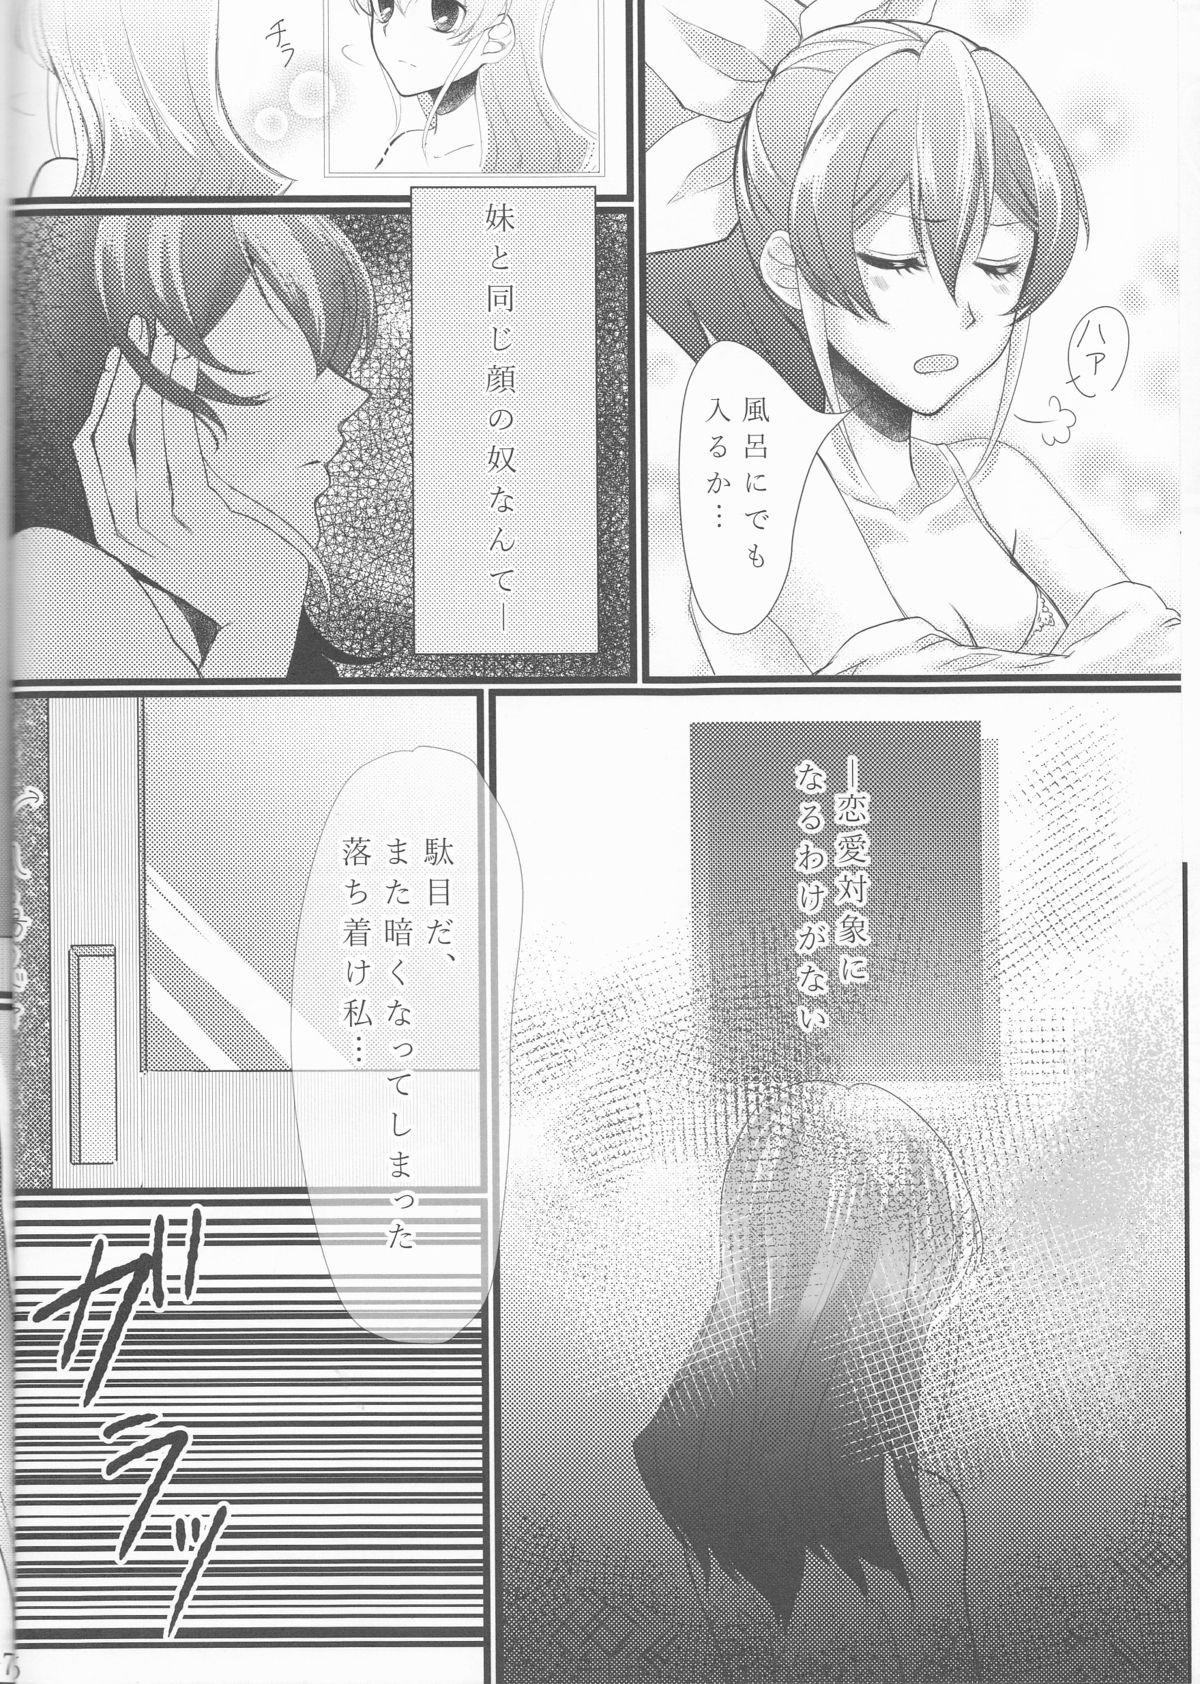 Fake Hoshoku Kankei ni Aru Serena to Shun ga Renai Kanjou o Idaku to Kou Naru. - Yu-gi-oh arc-v Consolo - Page 7